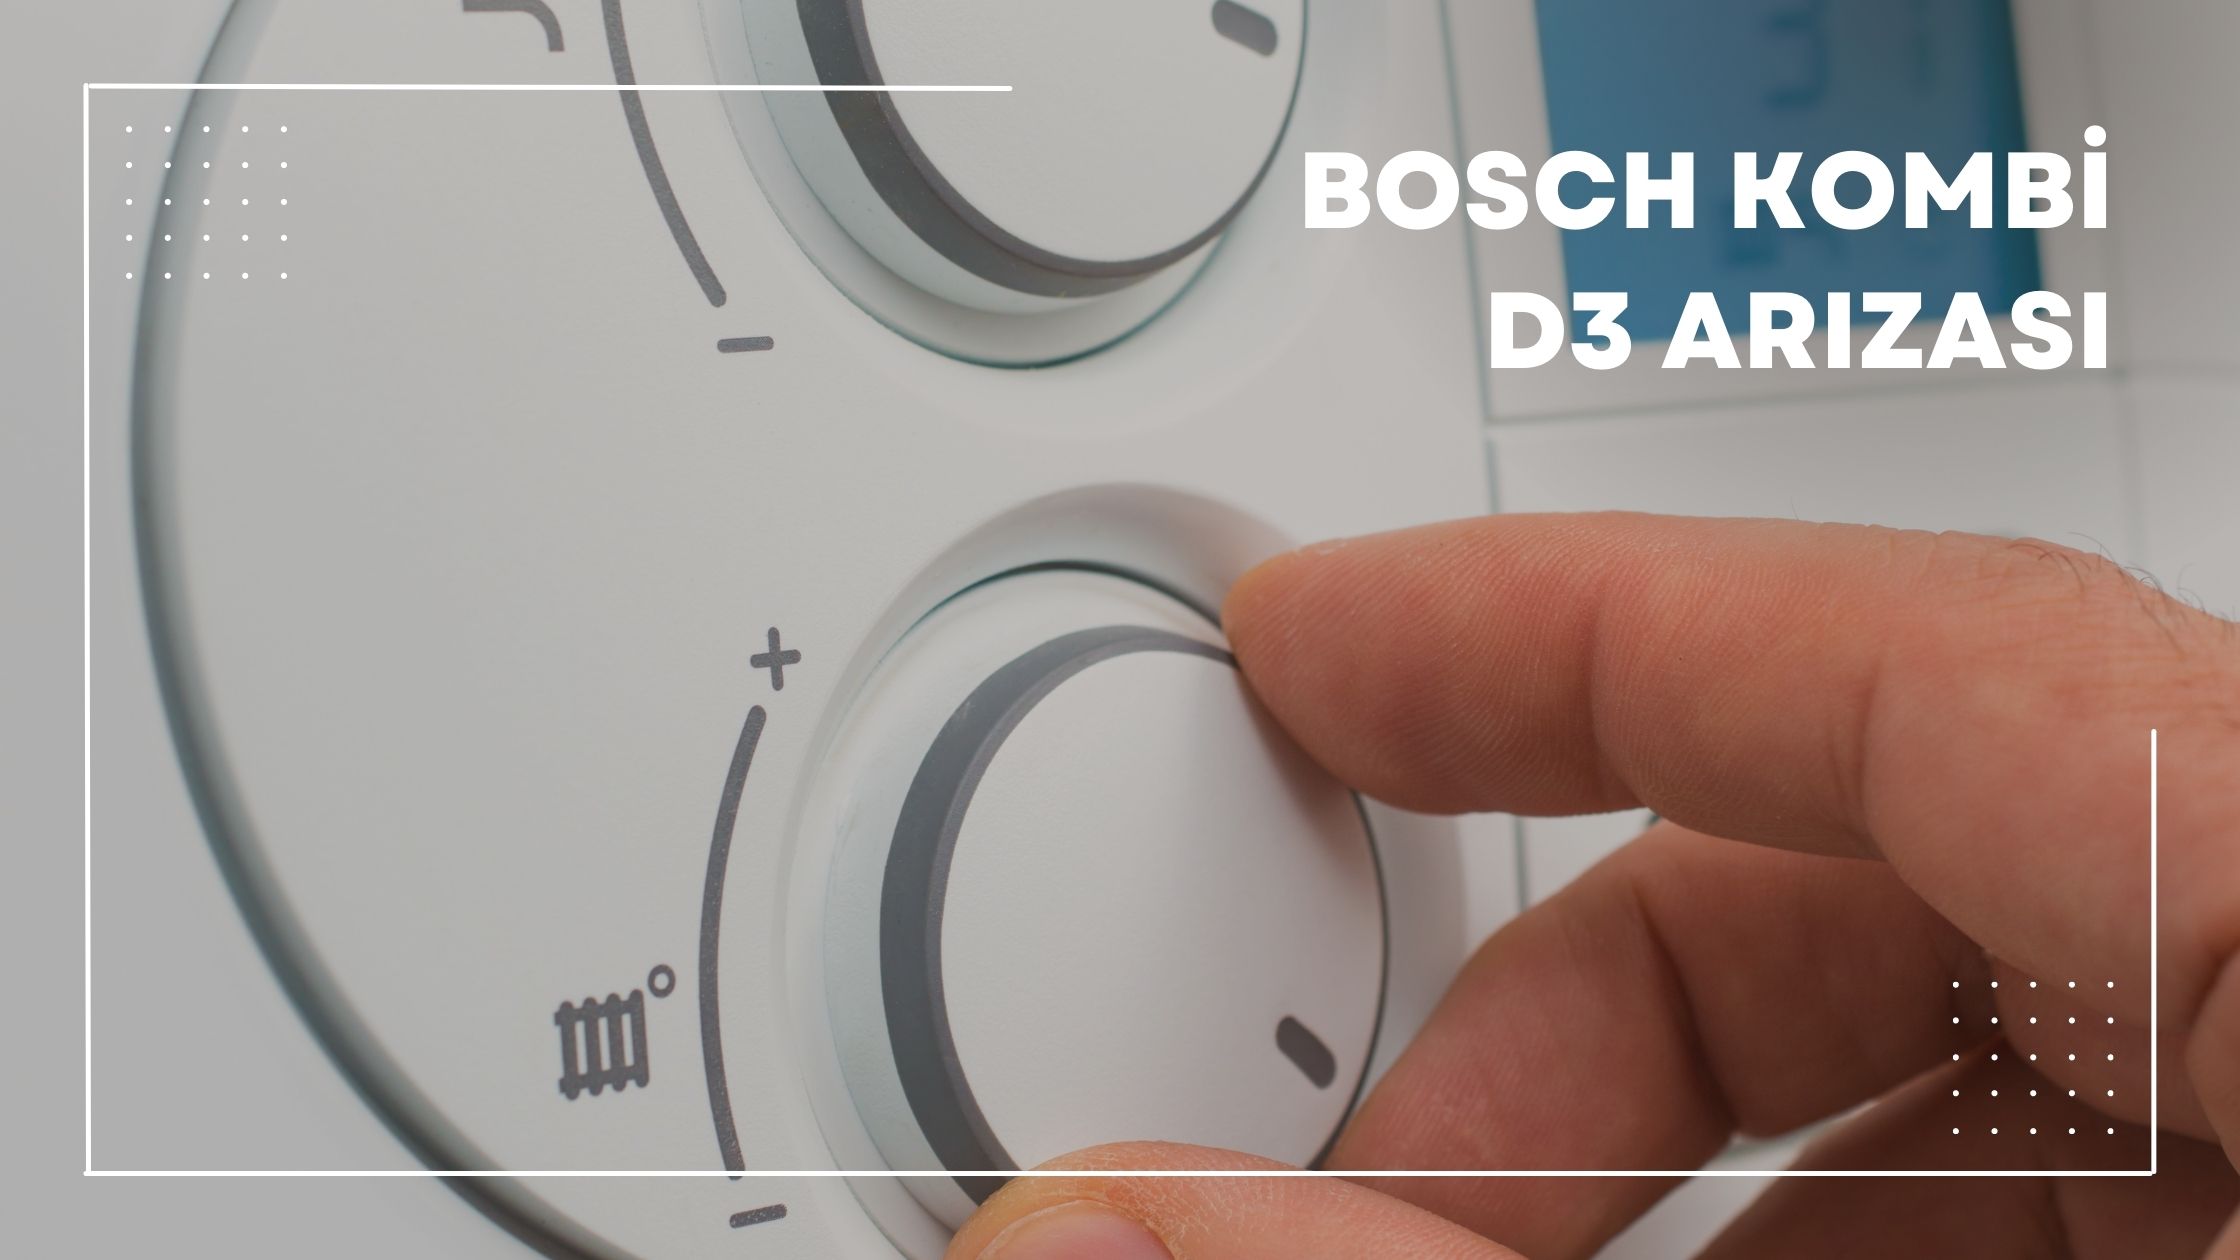 Bosch Kombi D3 Arızası